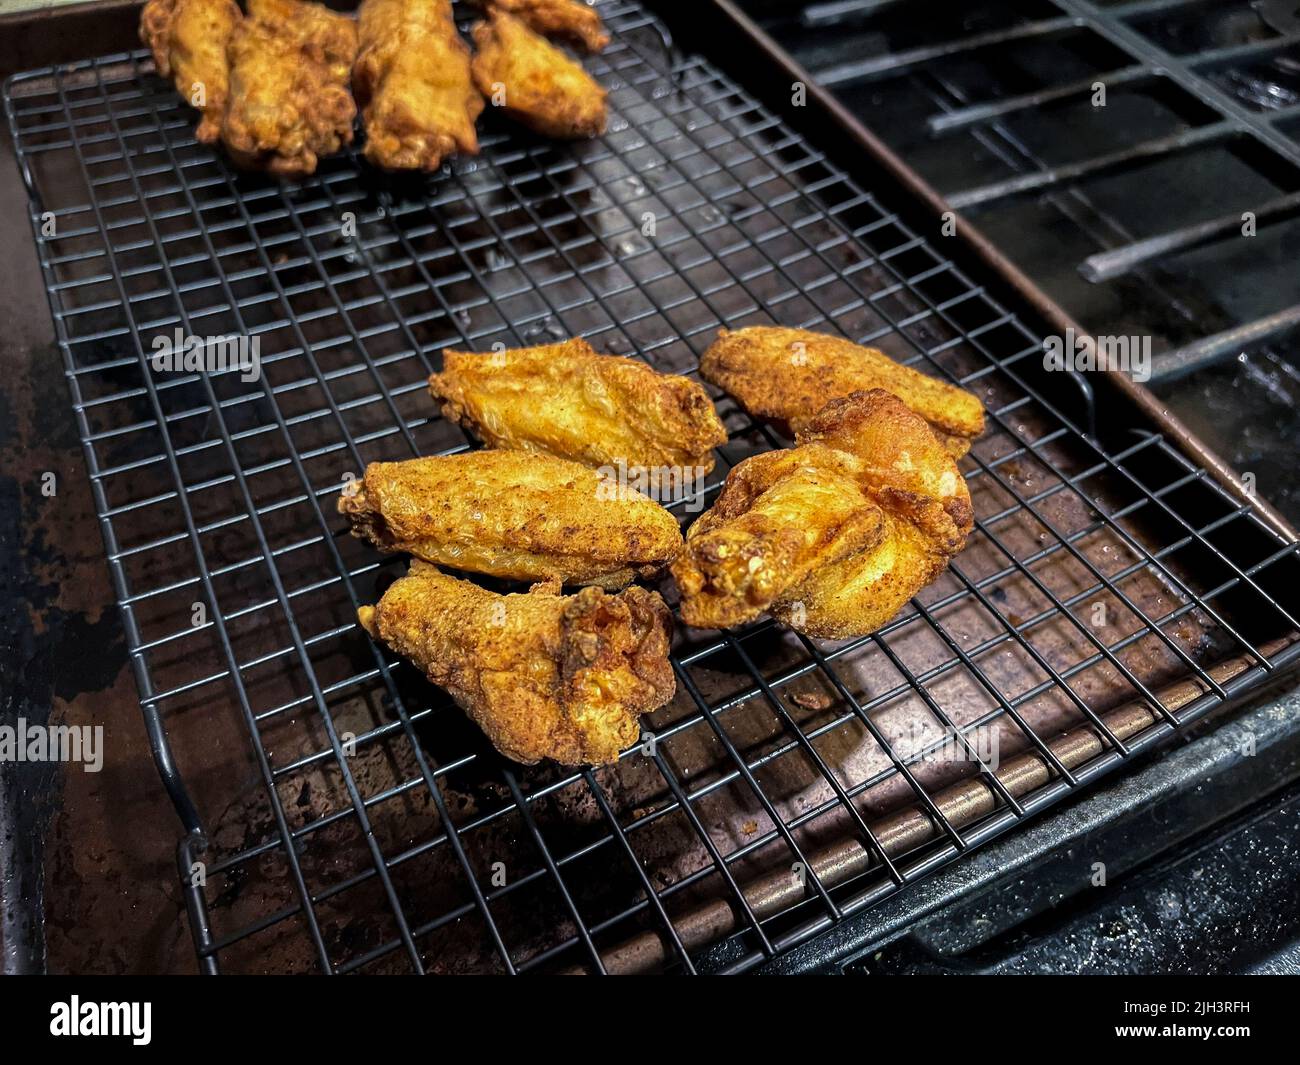 Primer plano, enfoque selectivo en alitas de pollo fritas caseras en un tendedero dentro de una cocina casera Foto de stock